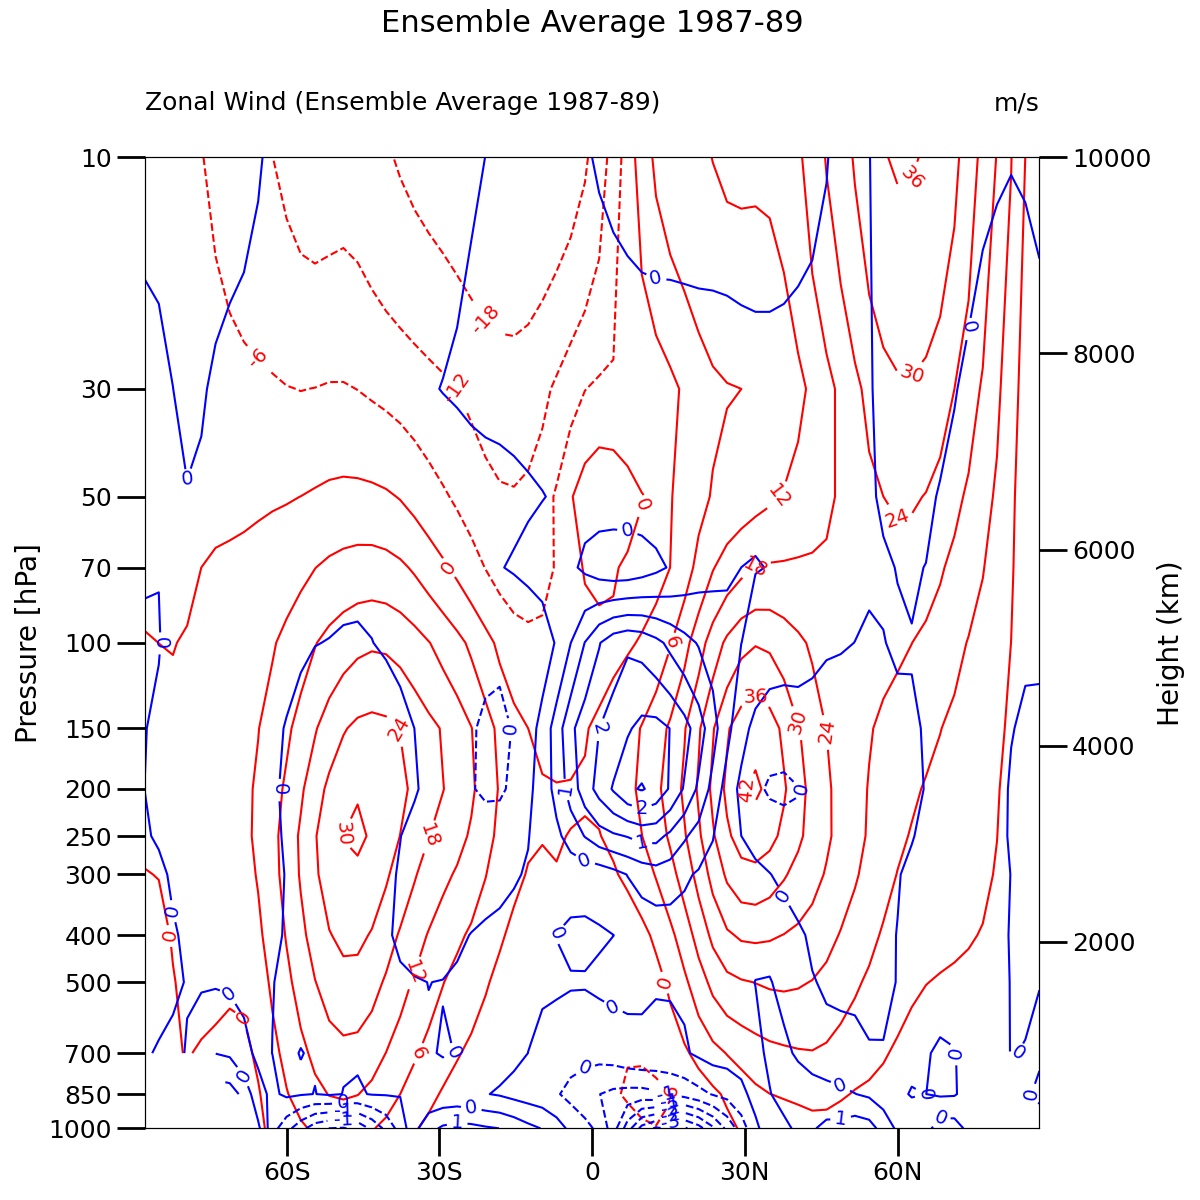 Zonal Wind (Ensemble Average 1987-89), Ensemble Average 1987-89, m/s